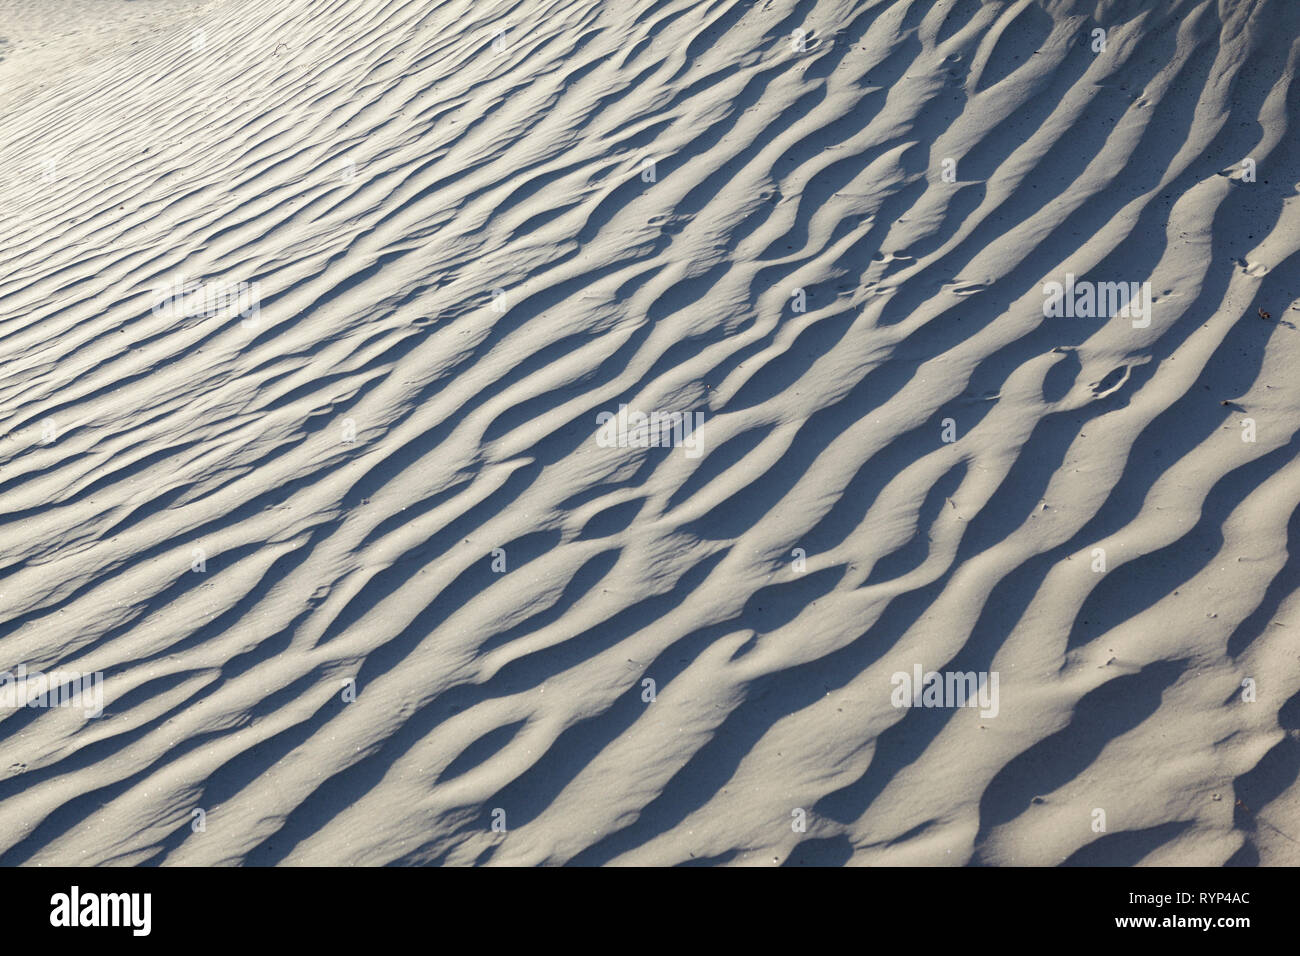 Mesquite Sand Dunes, Death Valley, Californie, USA. Banque D'Images